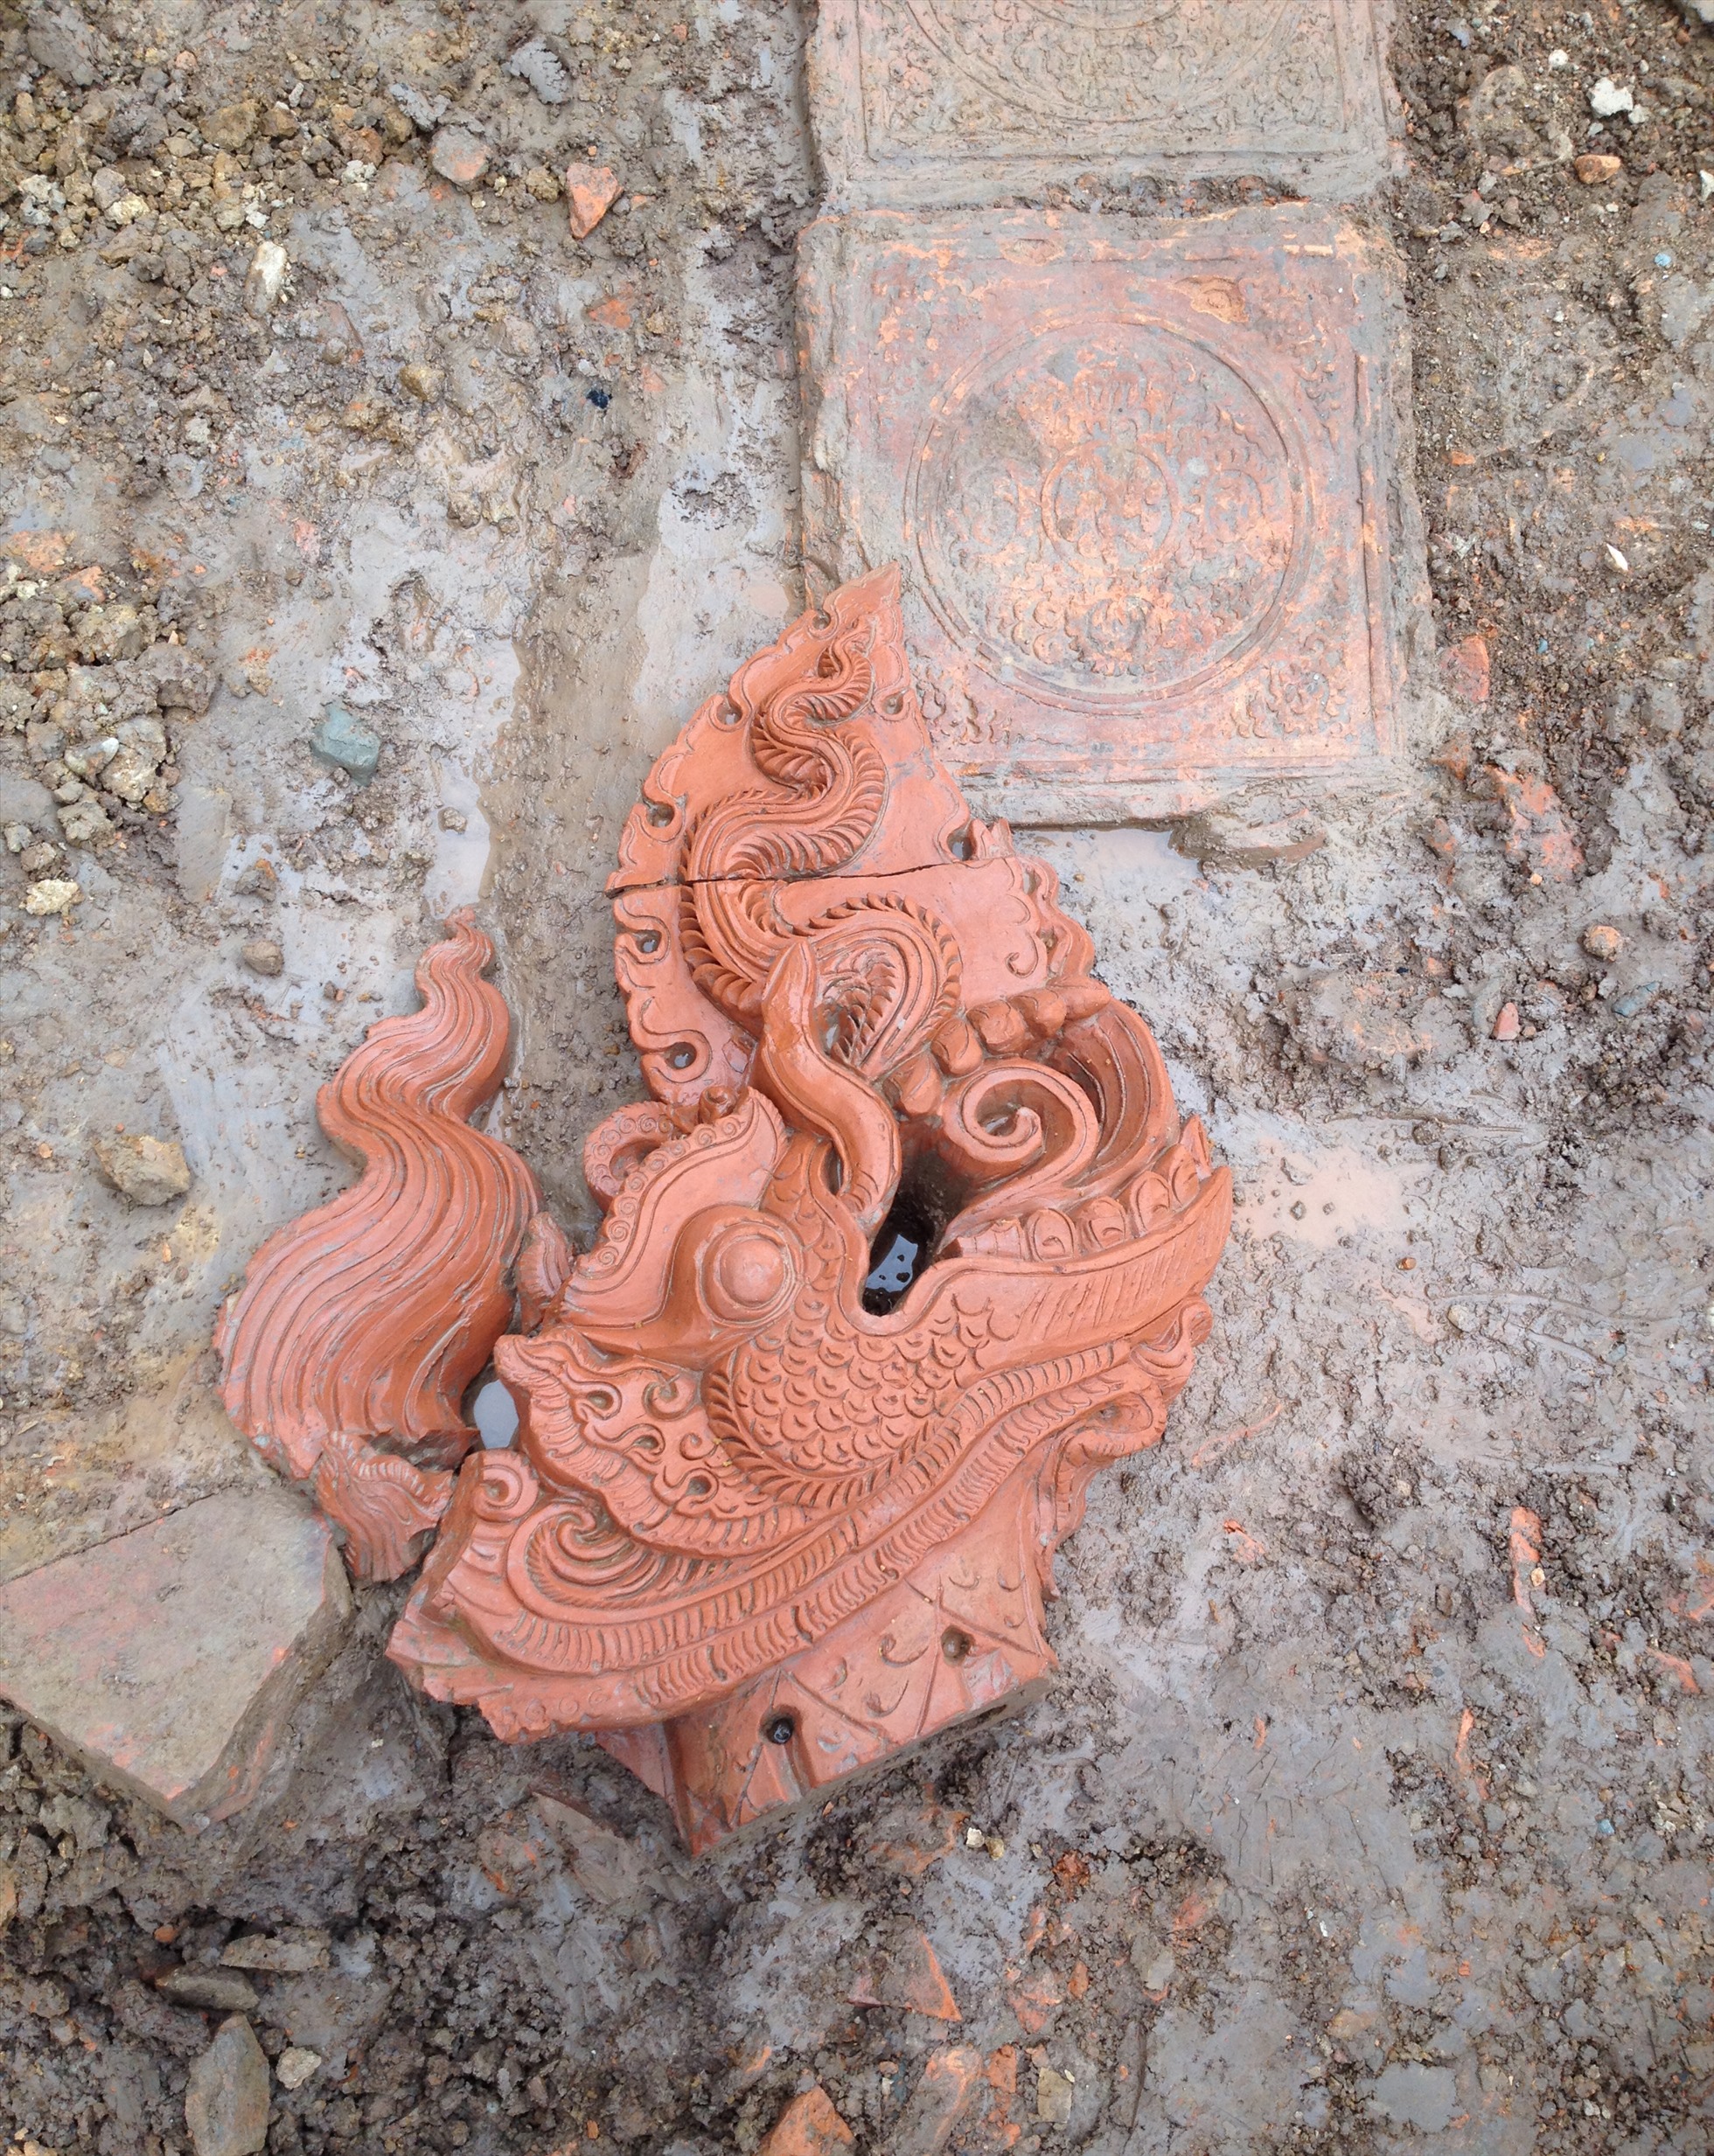 Tượng đầu rồng xuất lộ trong hố khai quật.Nguồn: Trung tâm Bảo tồn Di sản Thăng Long Hà Nội